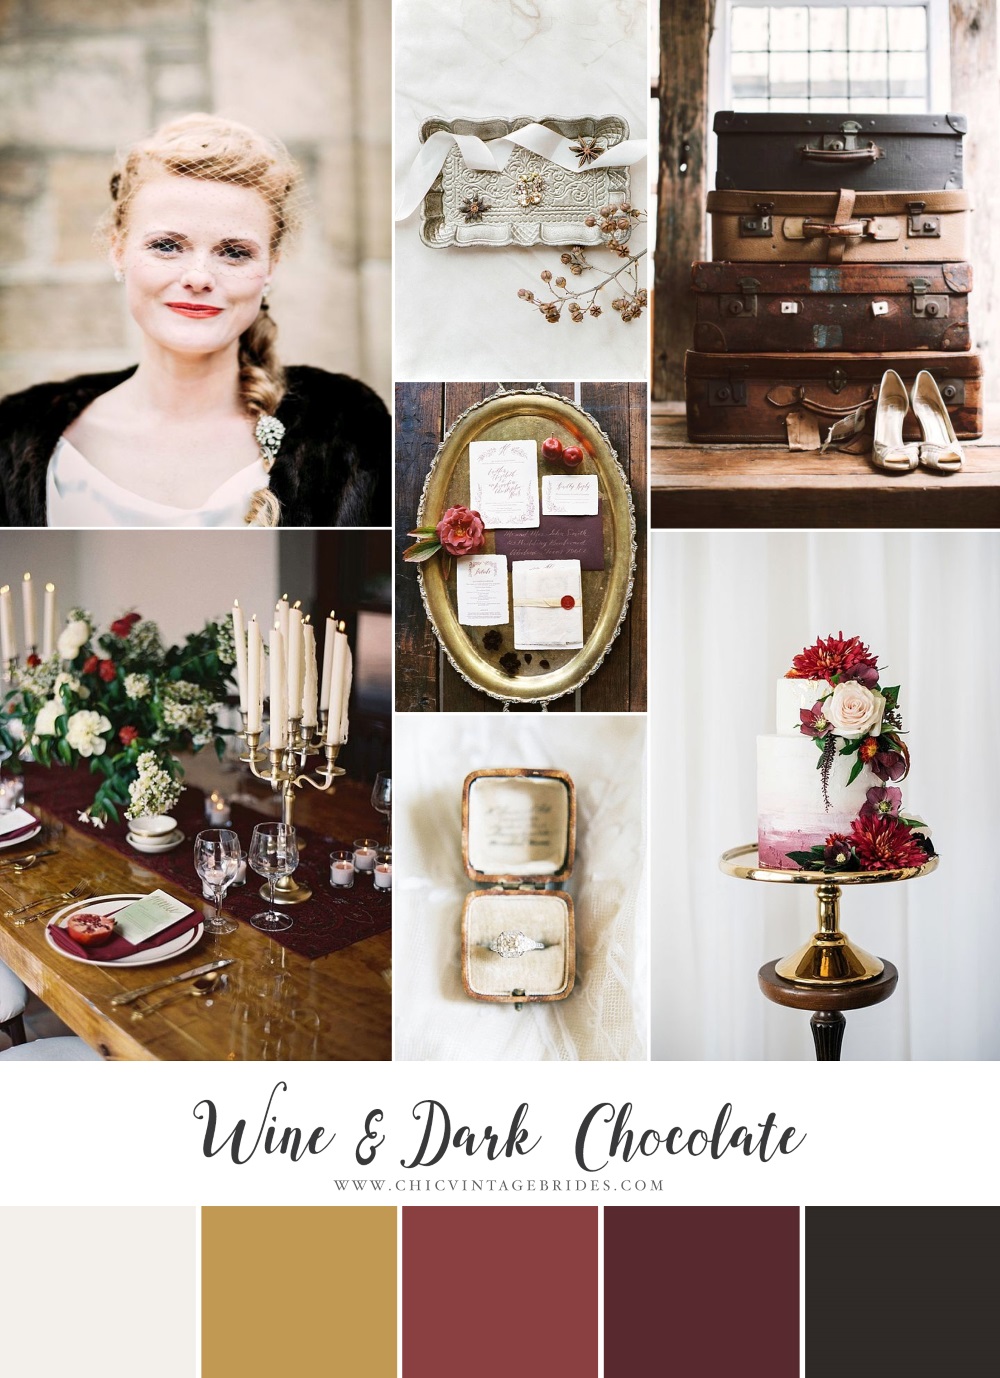 Wine & Dark Chocolate - Winter Wedding Inspiration in Rich Red & Brown